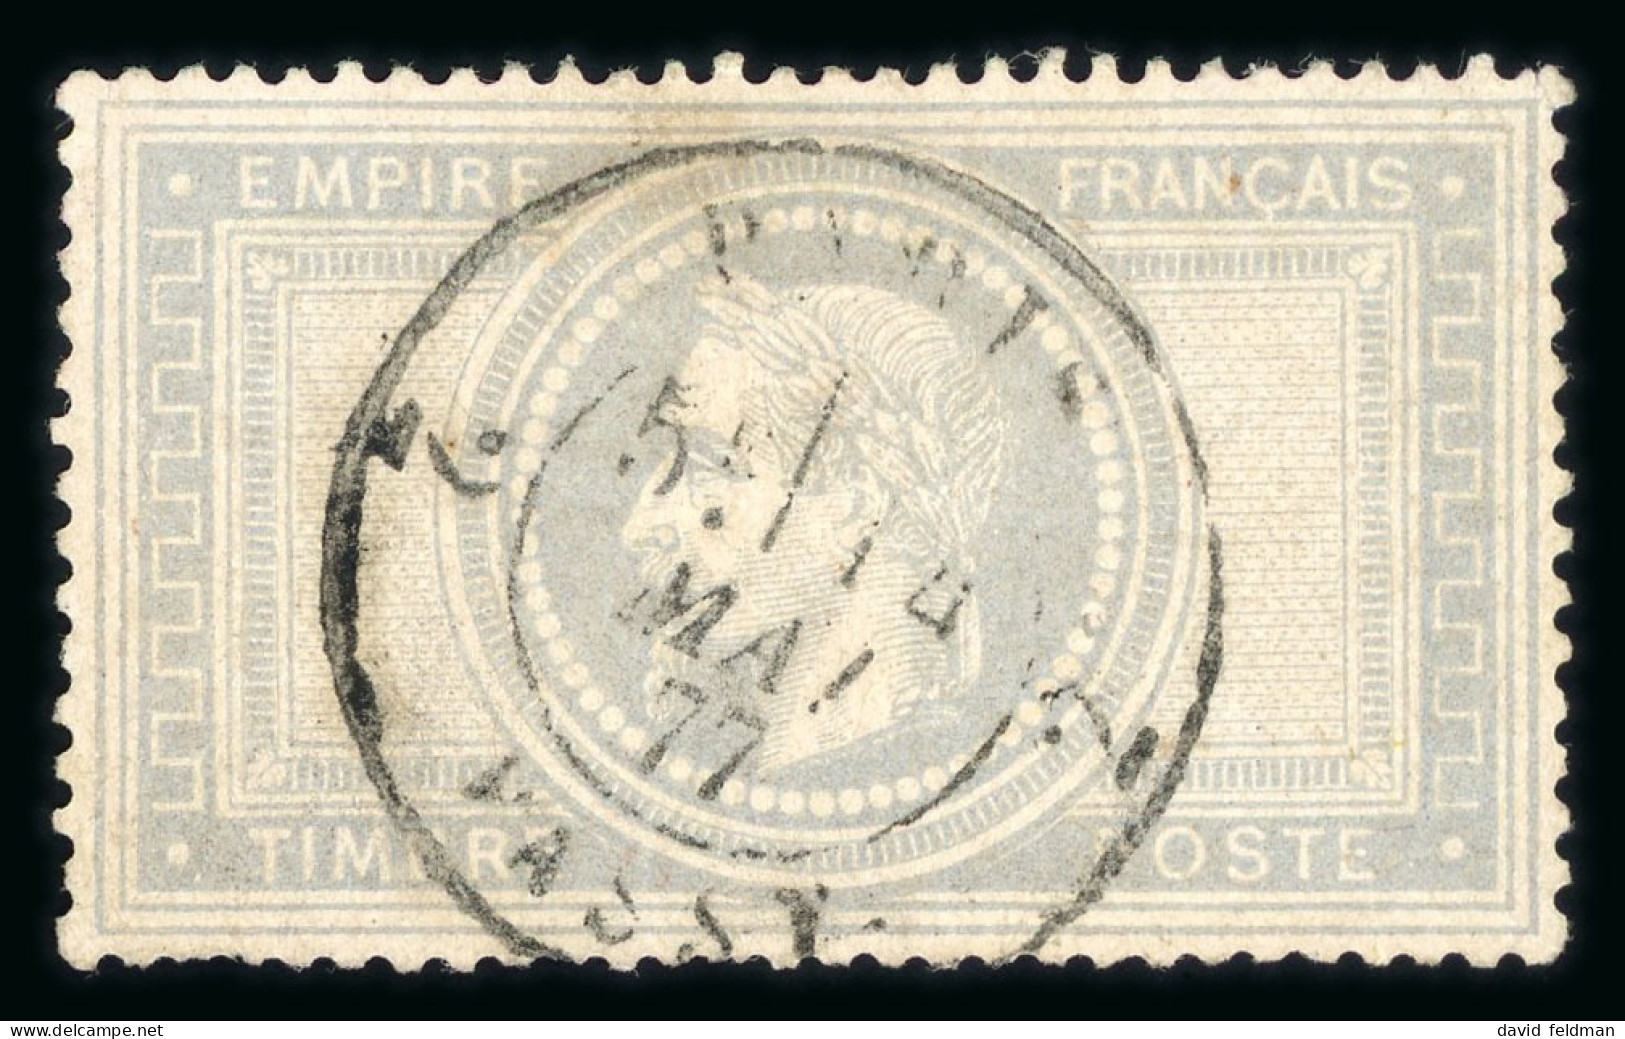 1869, Empire Lauré 5 Francs Violet Gris, Variété Sans - 1863-1870 Napoleon III With Laurels